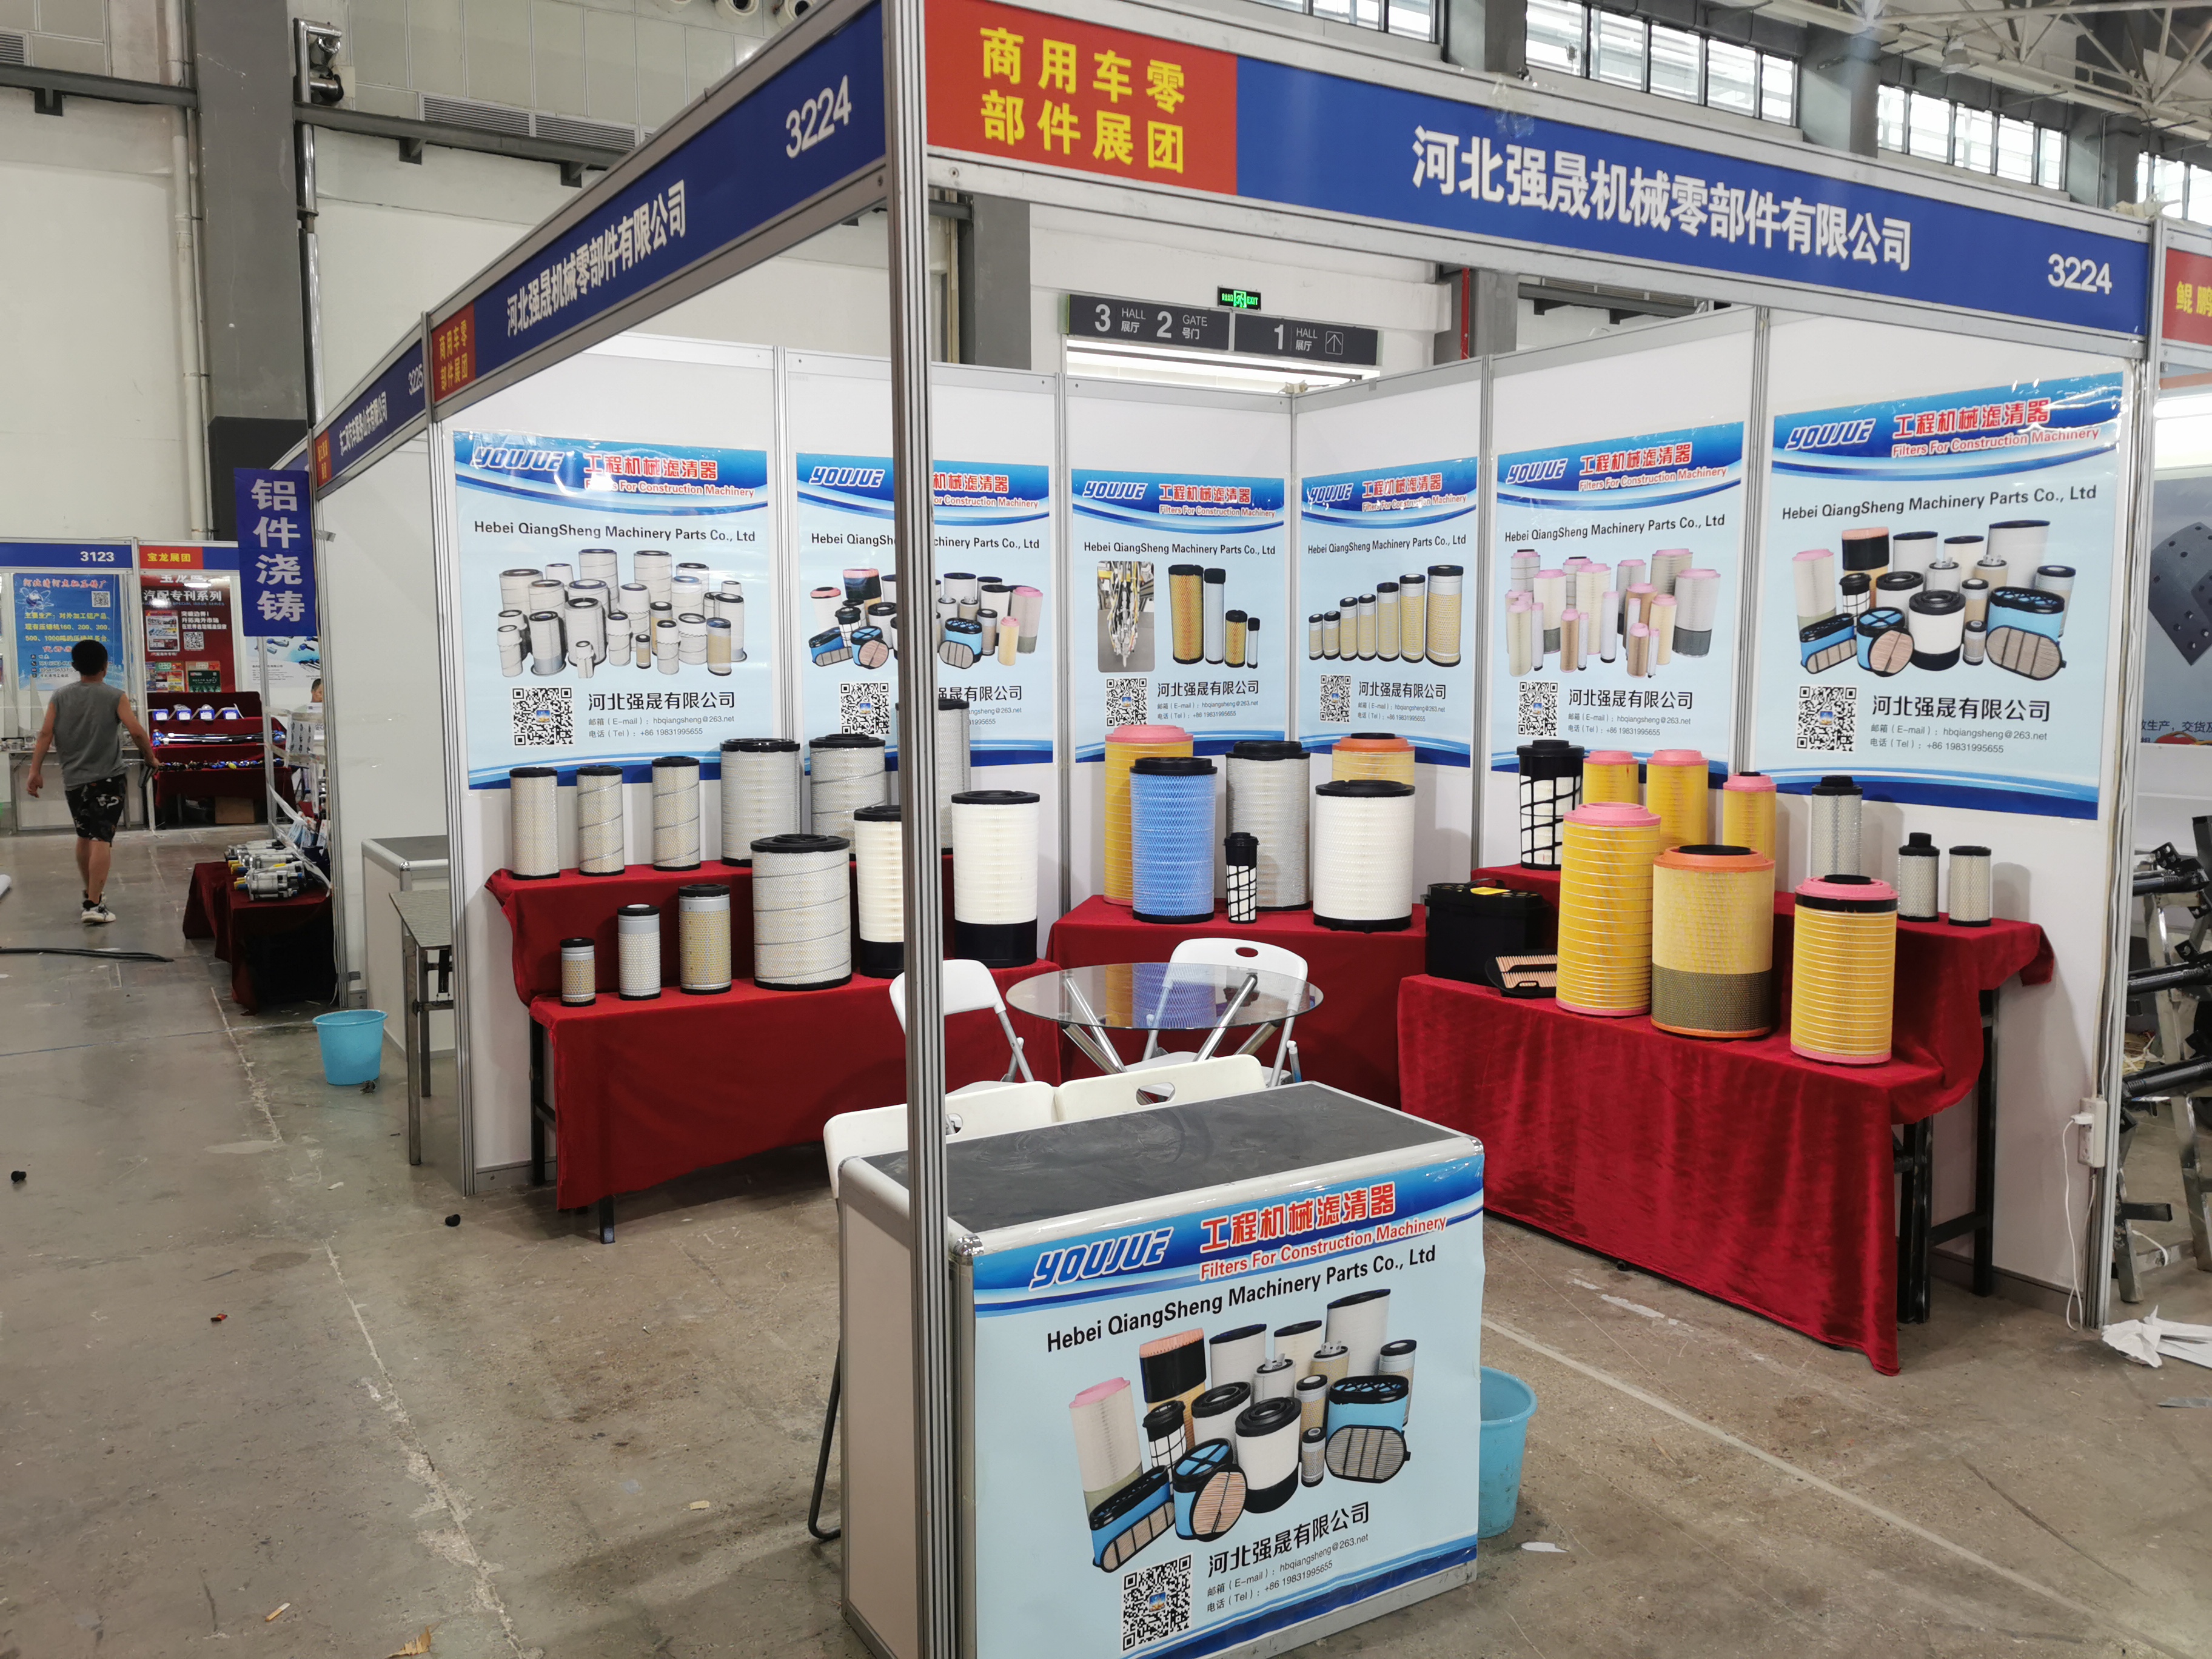 AUTO PARTS CHINA: Lub 92th Tuam Tshoj Automobile Parts Fair